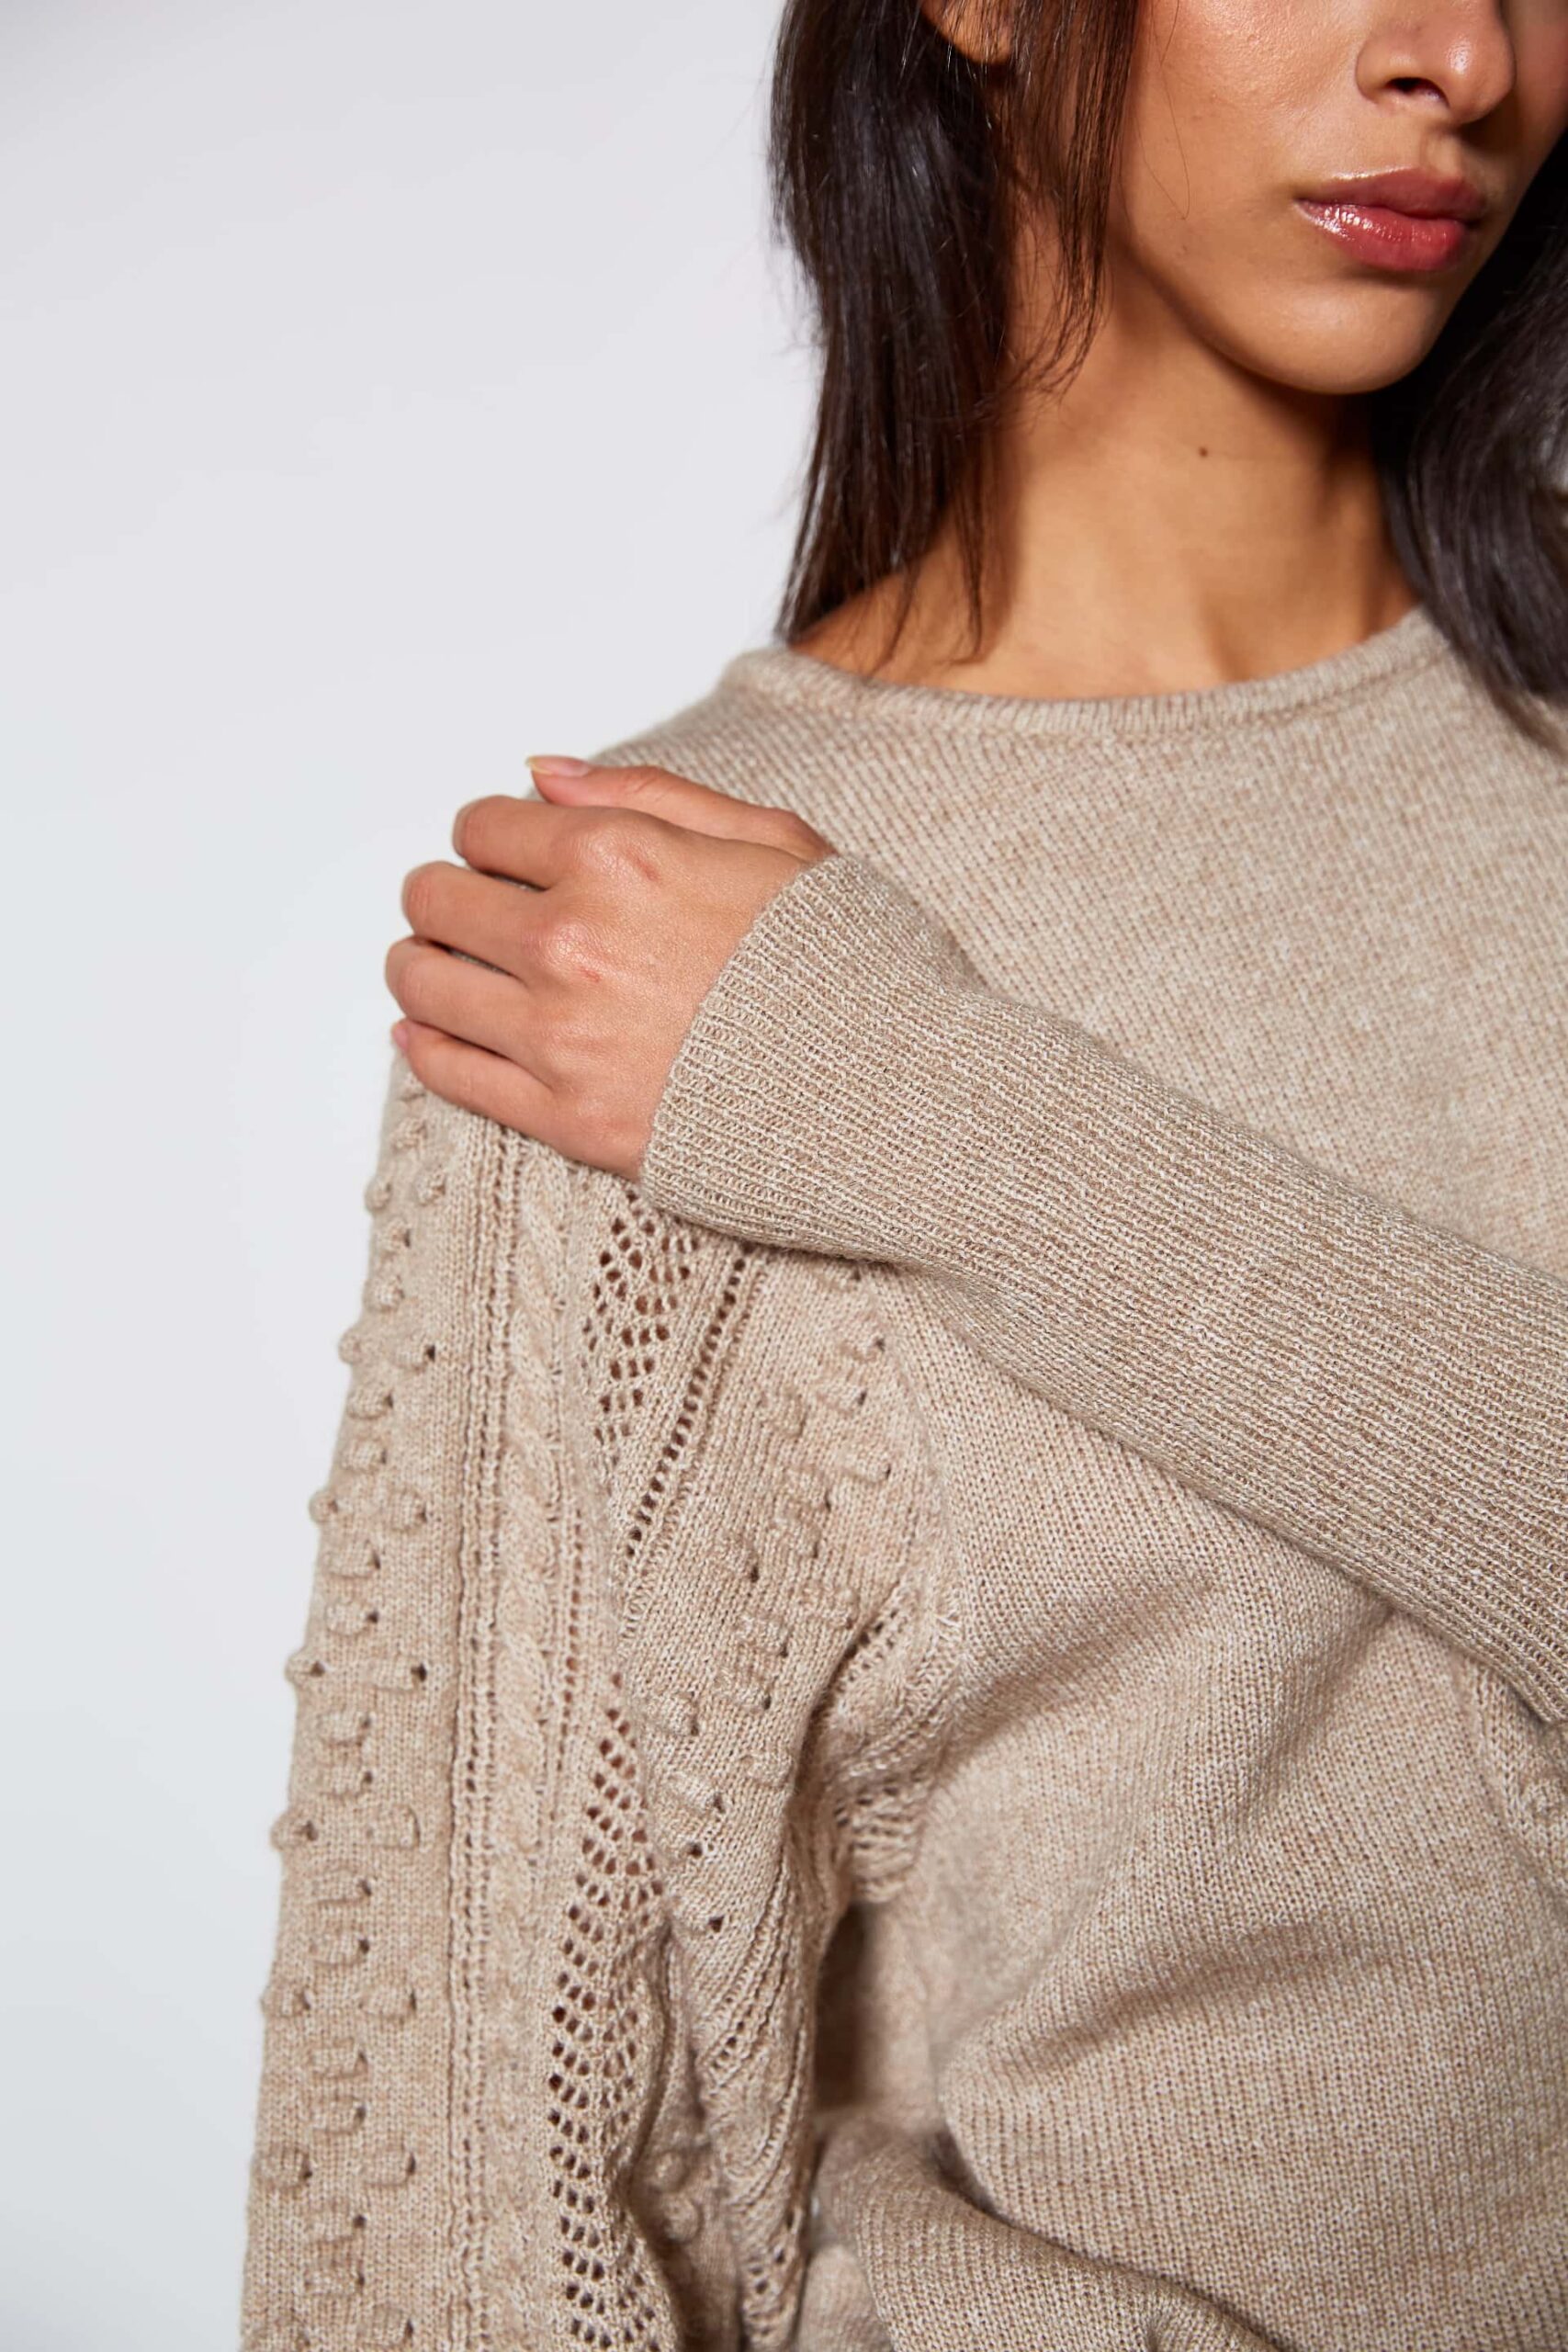 Fancy knit sweater